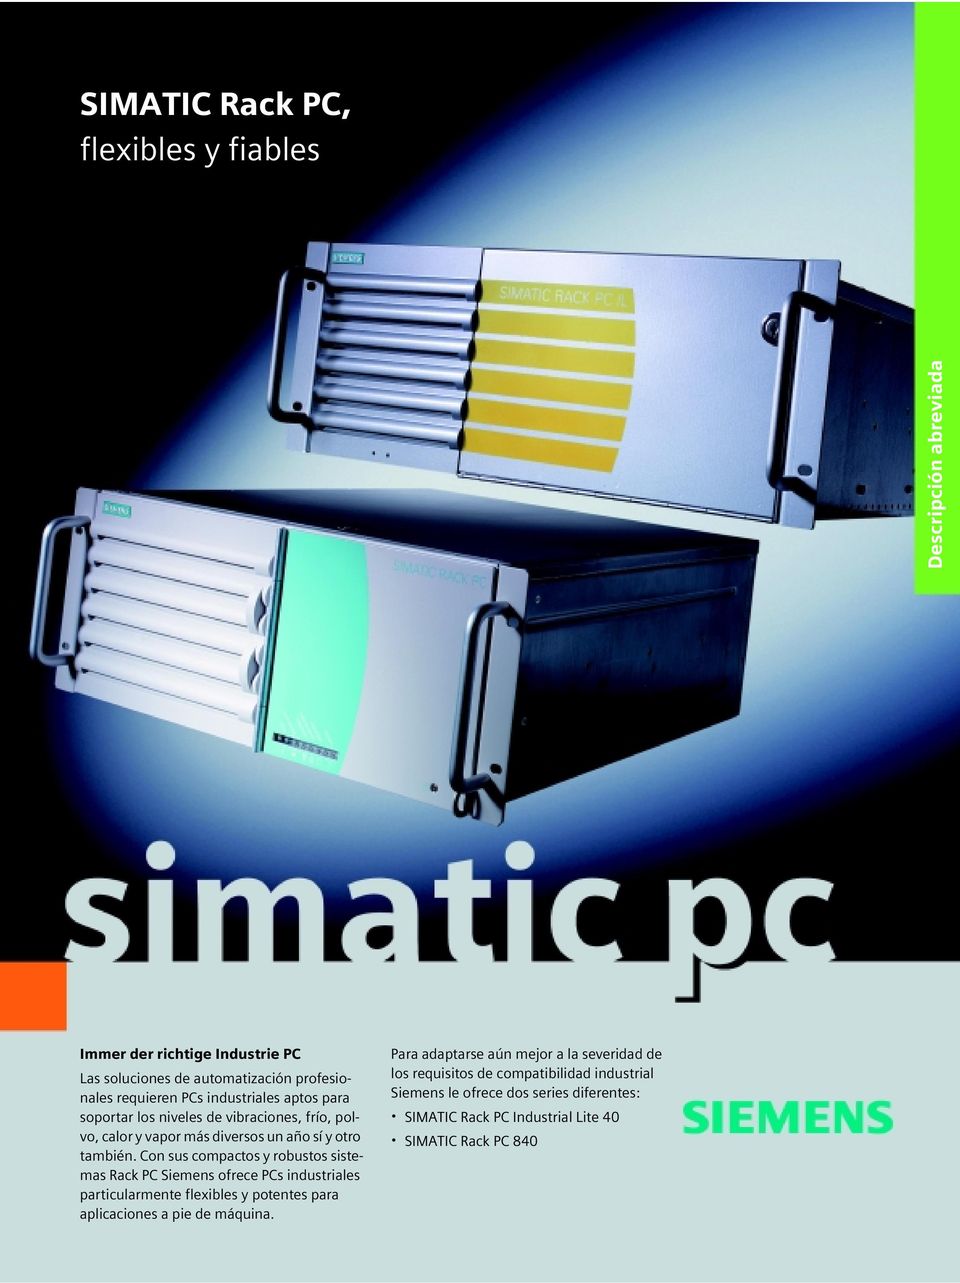 Con sus compactos y robustos sistemas Rack PC Siemens ofrece PCs industriales particularmente flexibles y potentes para aplicaciones a pie de máquina.